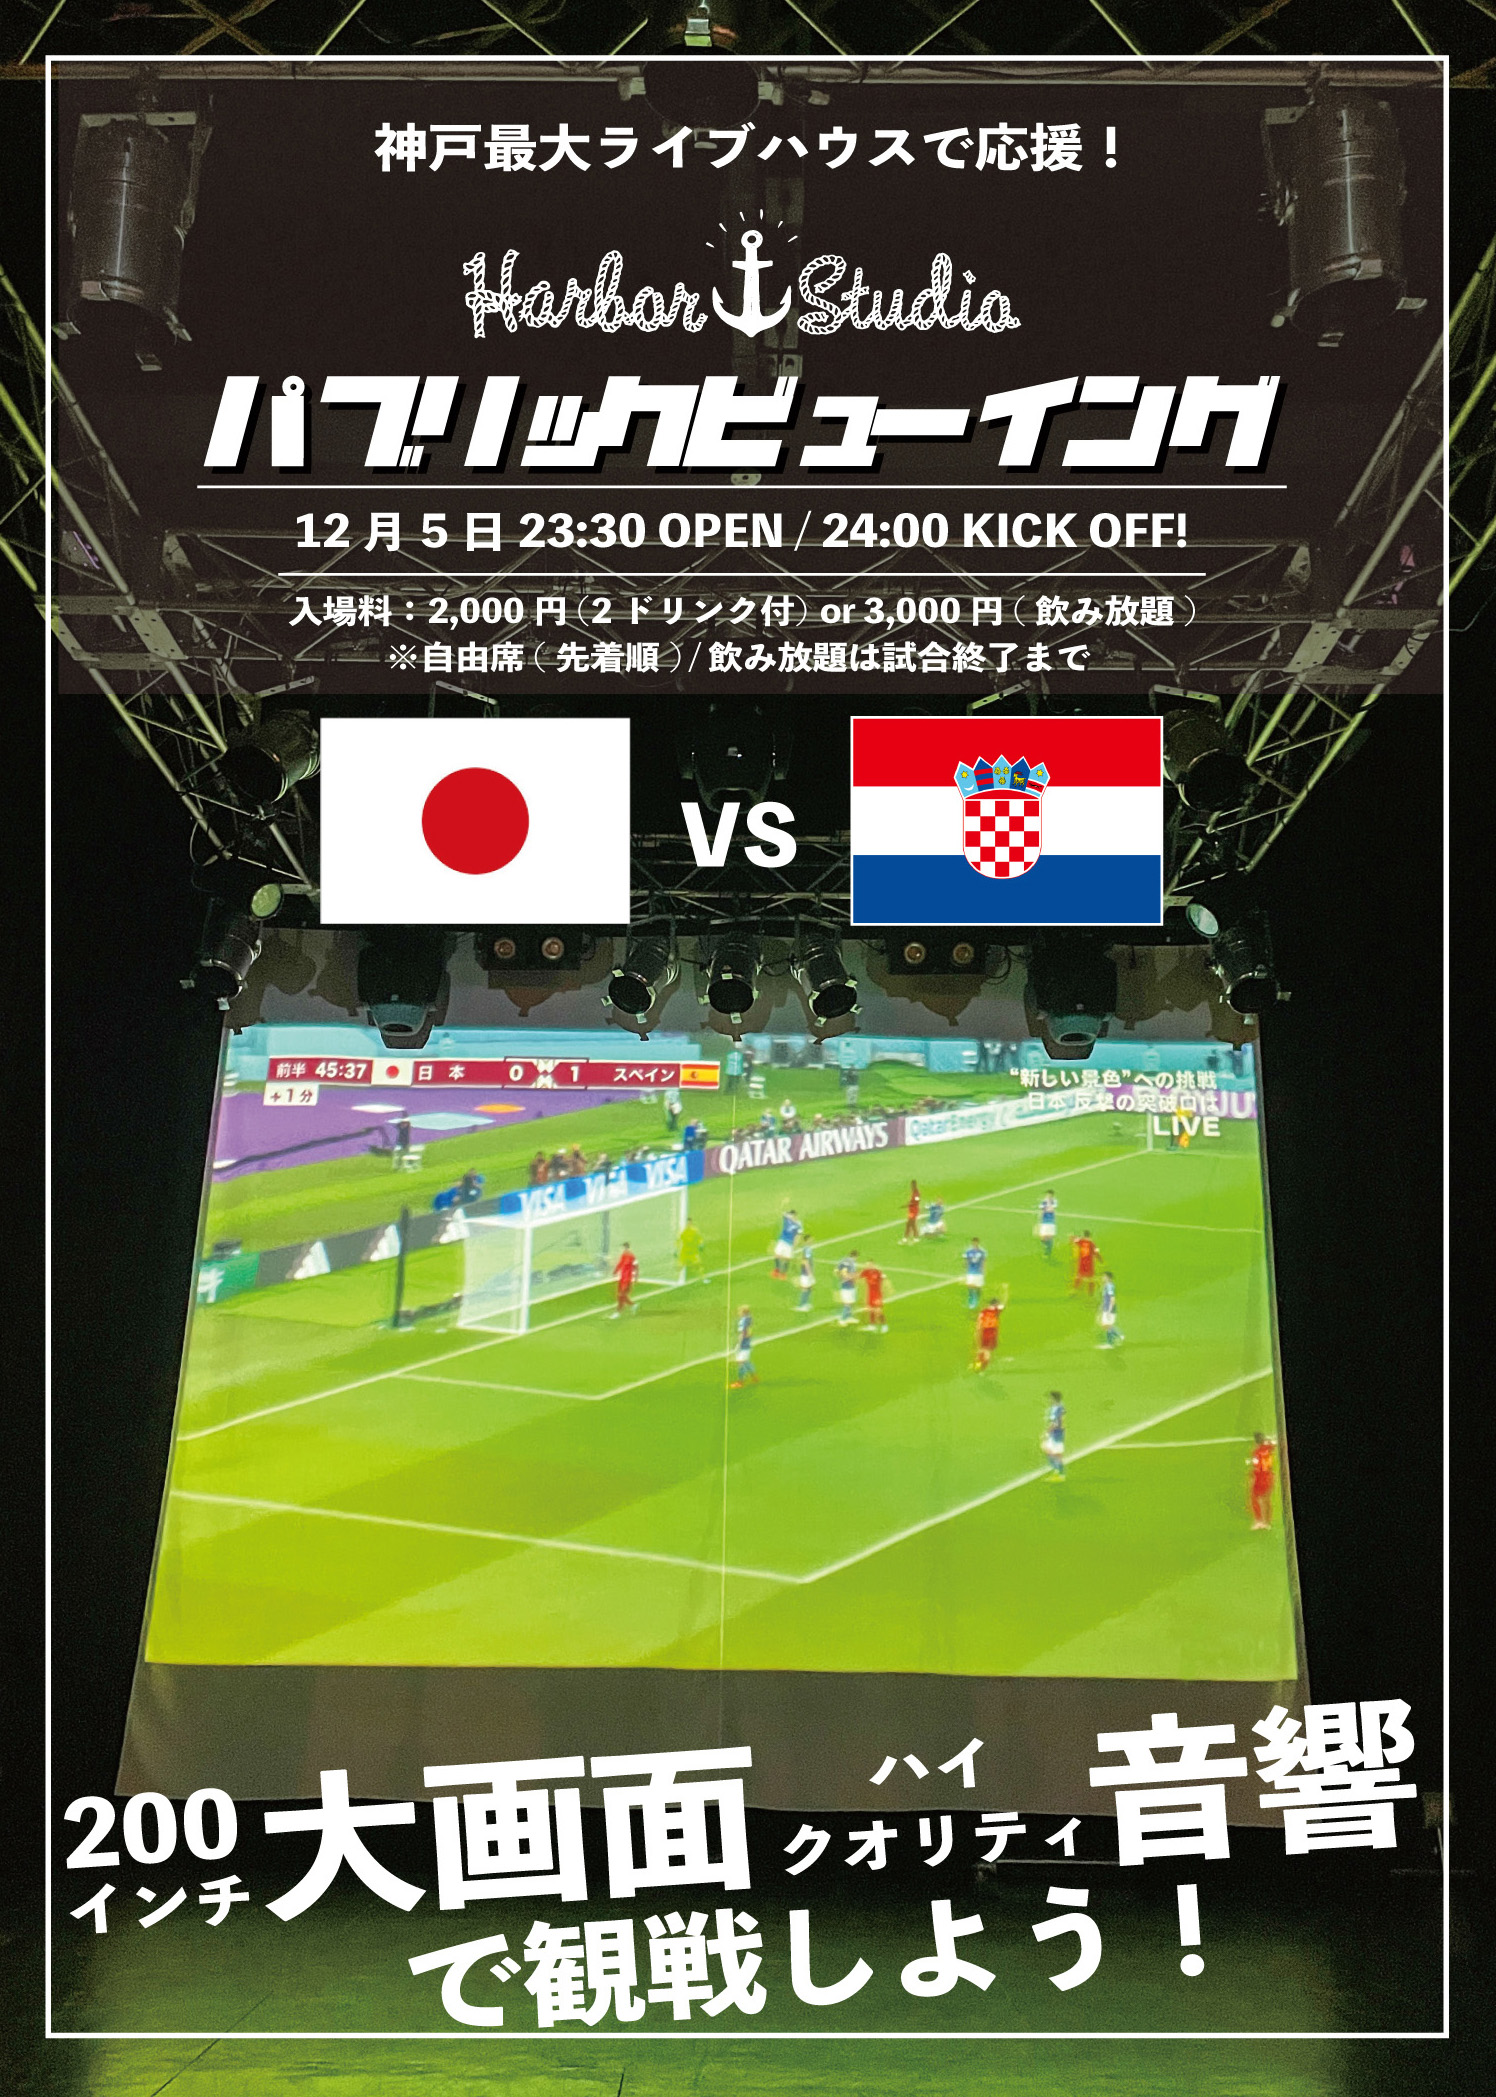 FIFA ワールドカップ 日本 × クロアチア戦 パブリックビューイング